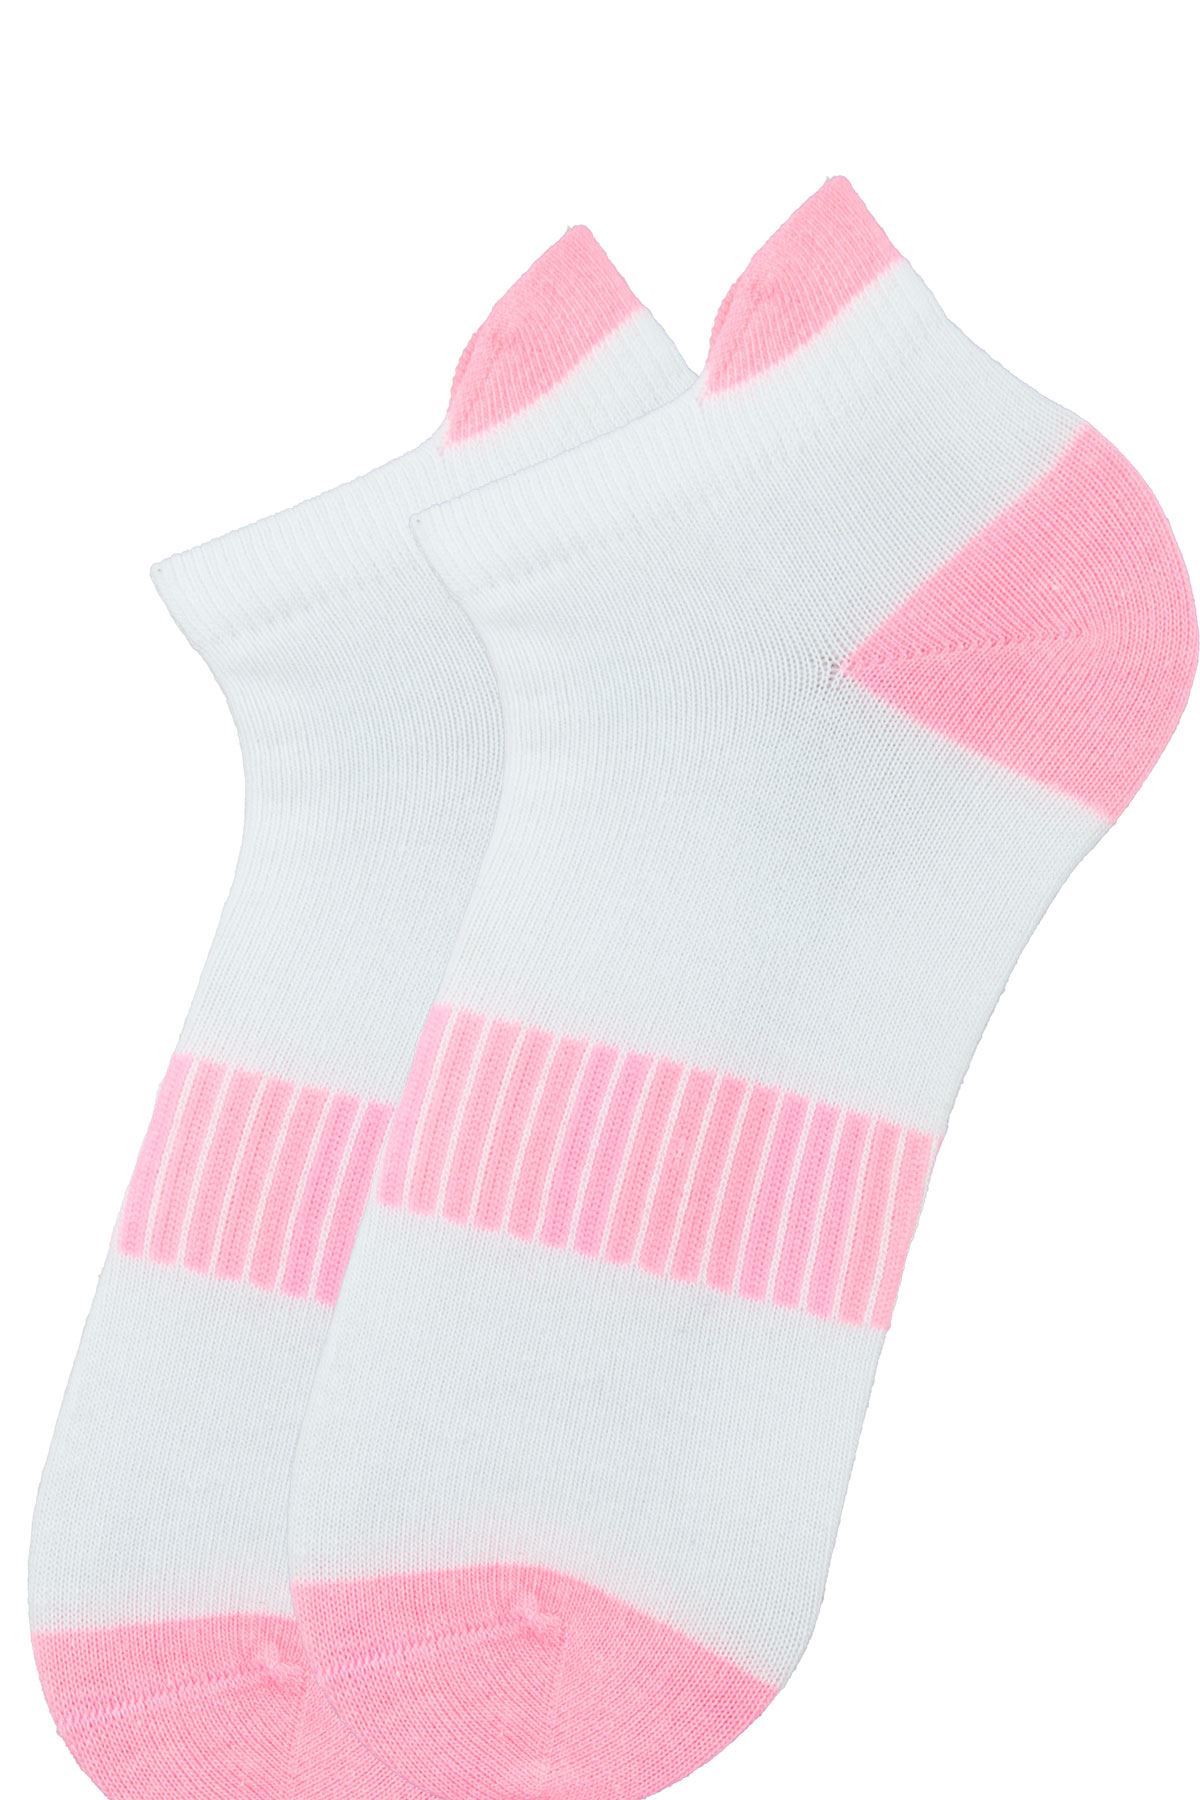 WOMAN ANKLE SOCKS SPORT NEON | Buy Branded Wholesale Socks Online At ...